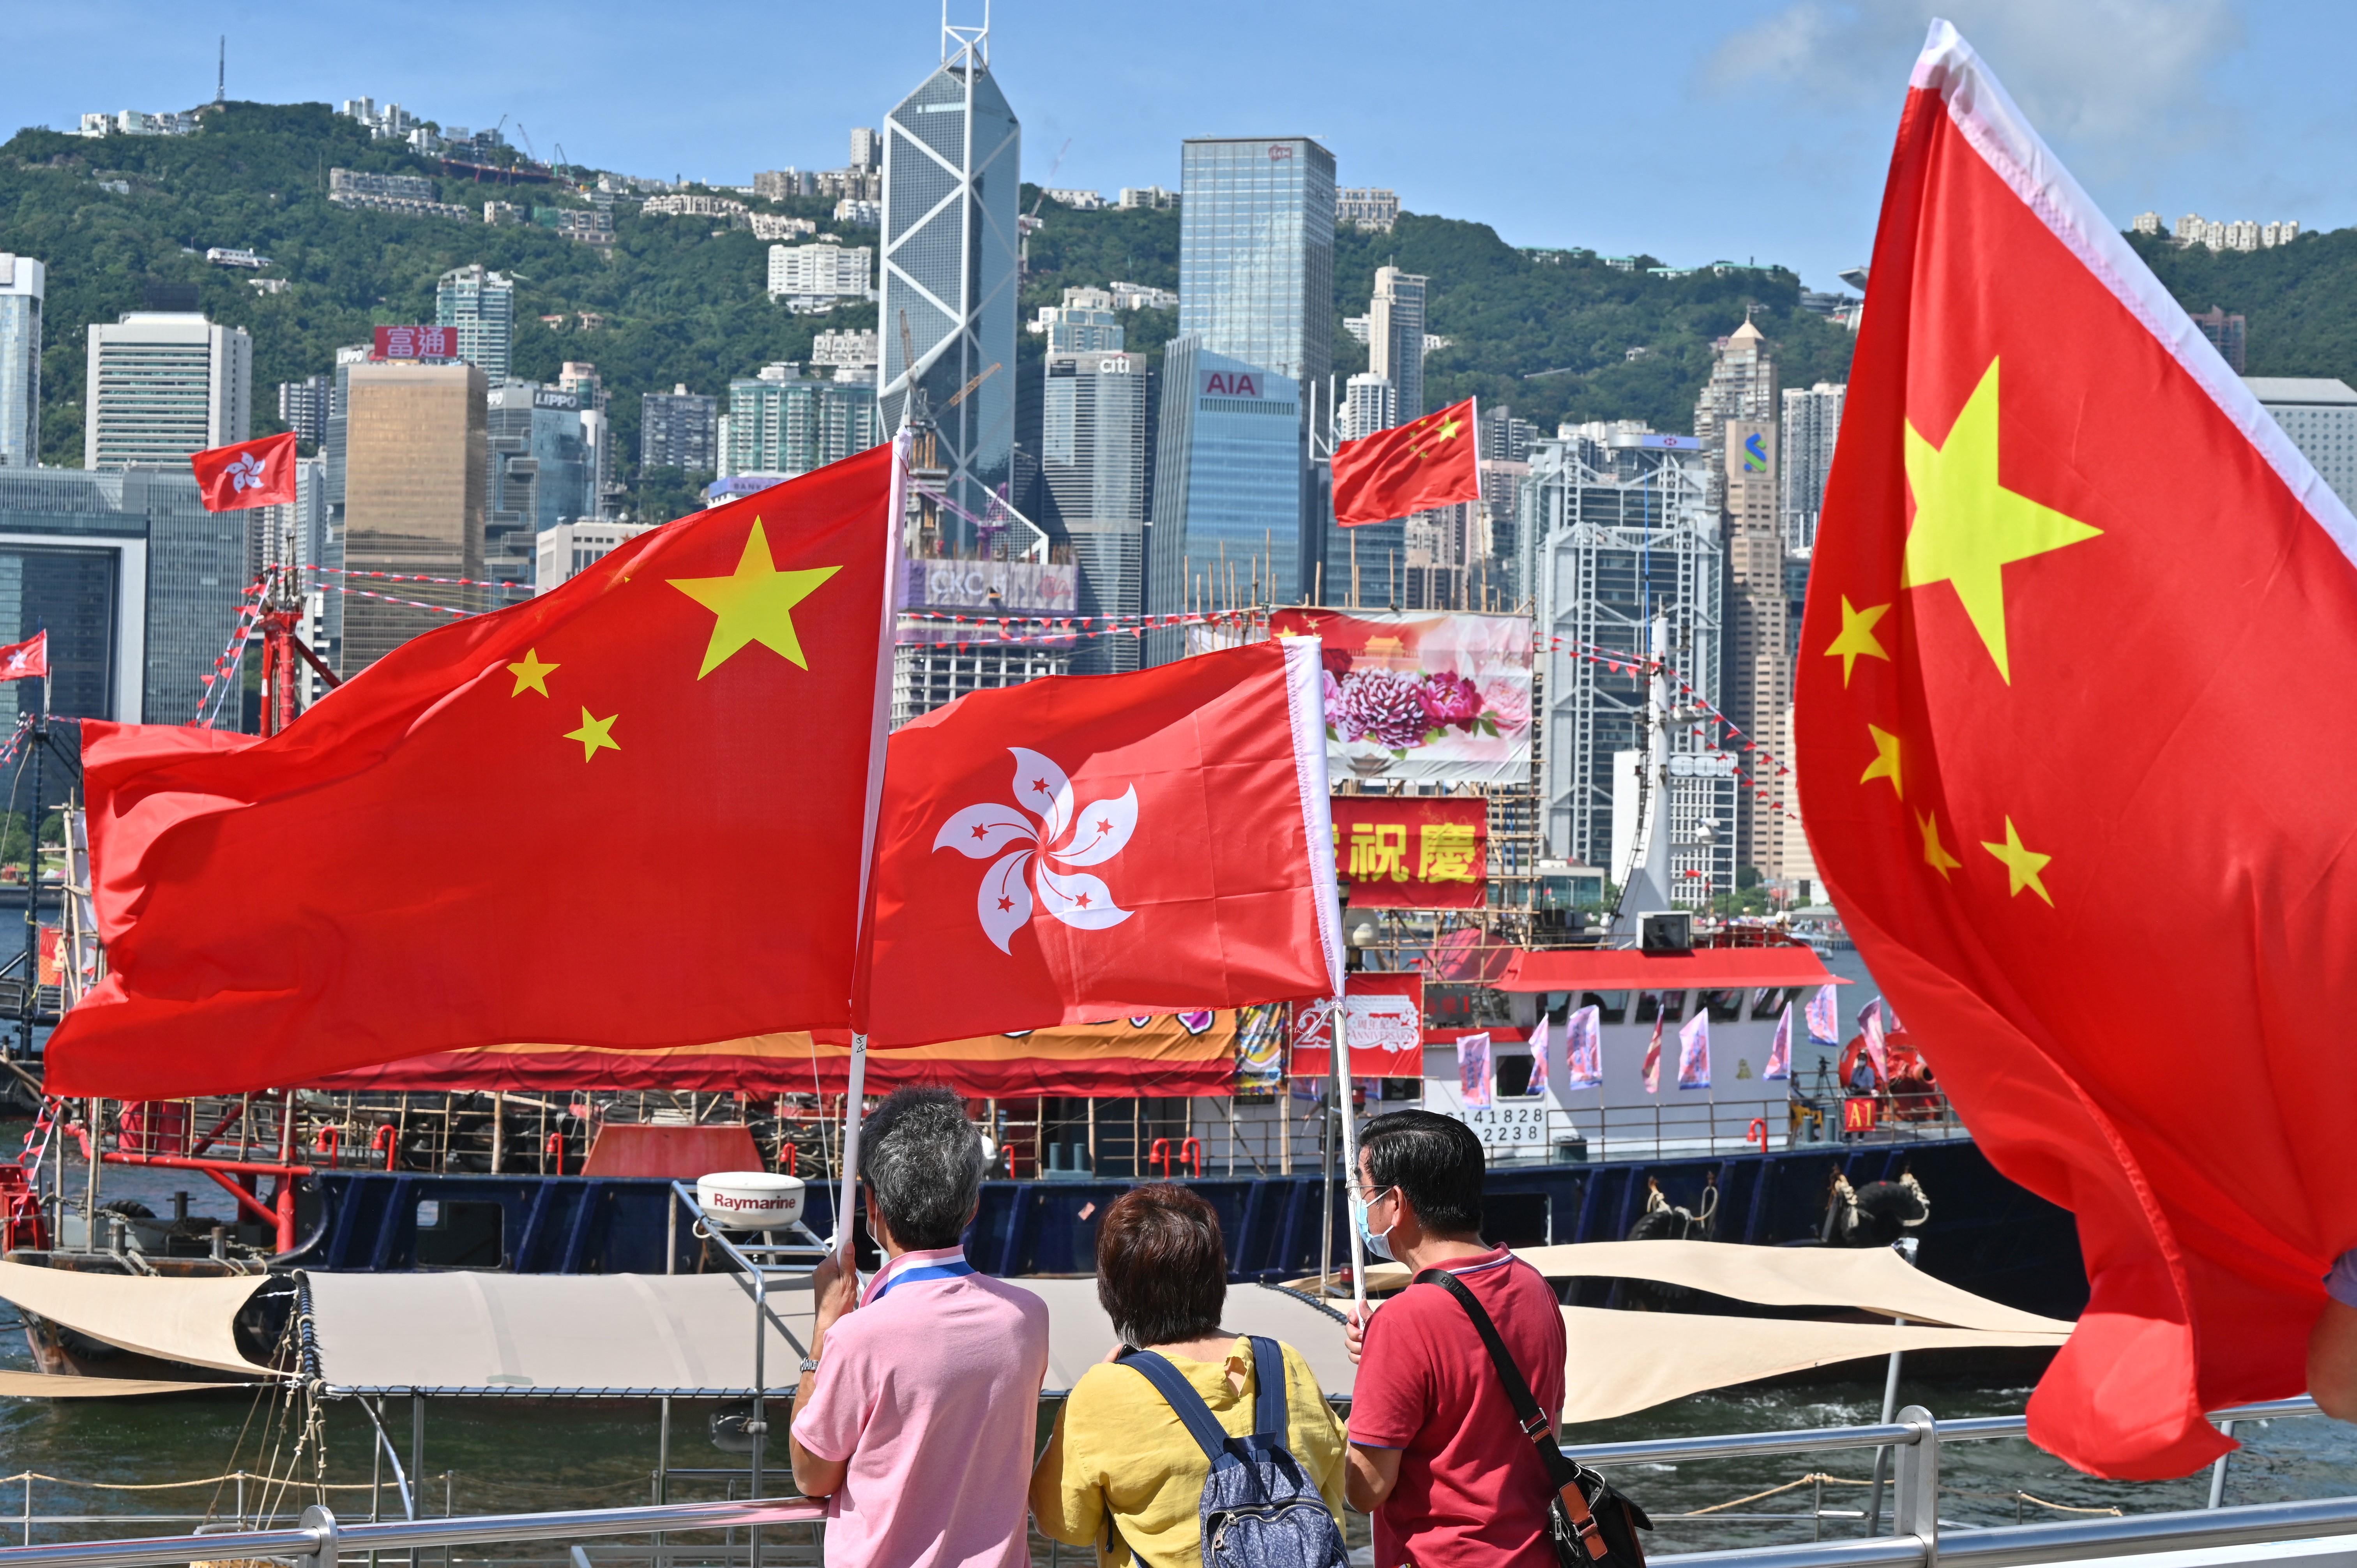 Hồng Kông và Trung Quốc: Hình ảnh Hồng Kông và Trung Quốc sẽ khiến bạn đắm chìm vào vẻ đẹp của quốc gia phồn hoa này. Với kiến trúc độc đáo và cái nhìn toàn cảnh của thành phố, bạn sẽ được khám phá và đắm mình vào không gian đầy cảm hứng. Hãy xem ảnh để tận hưởng những khoảnh khắc tuyệt vời này!